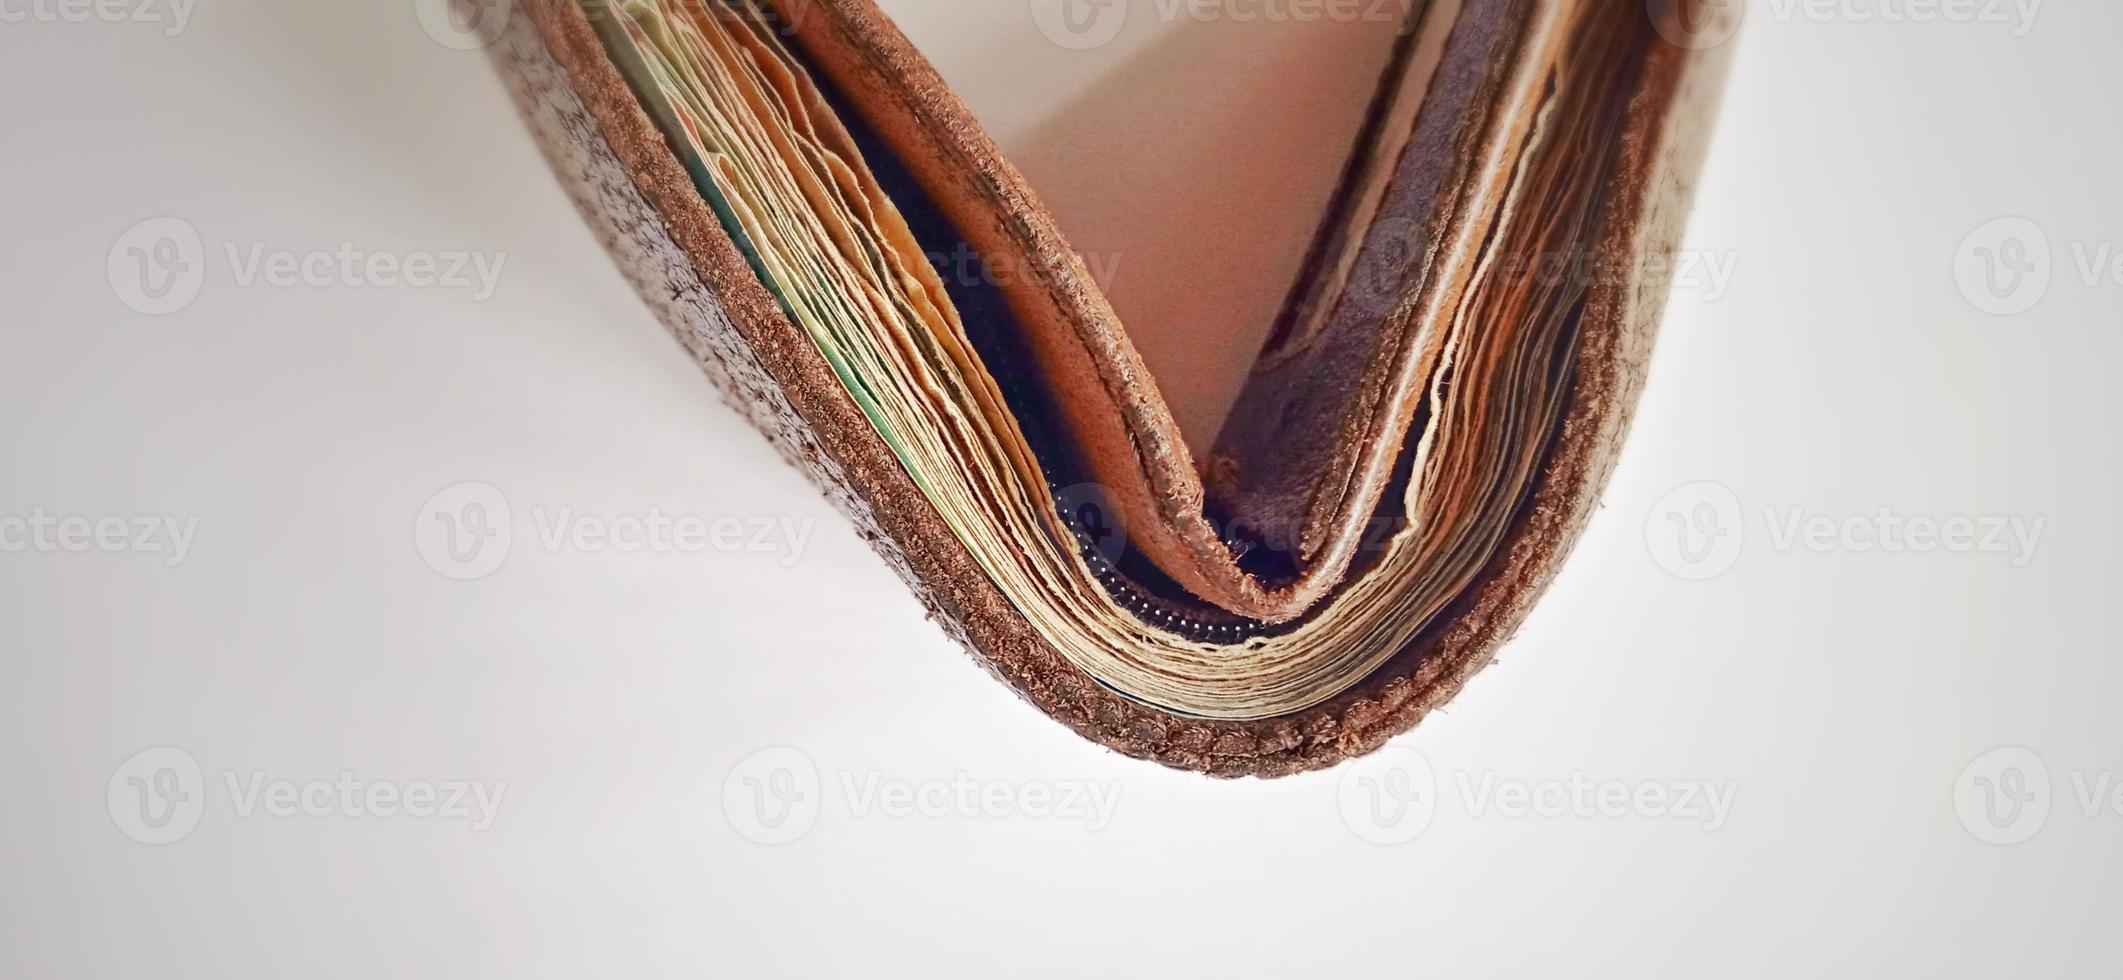 Eine alte braun-orangefarbene synthetische Brieftasche mit etwas Geld darin auf dem schwach grau-gelben Hintergrund. foto